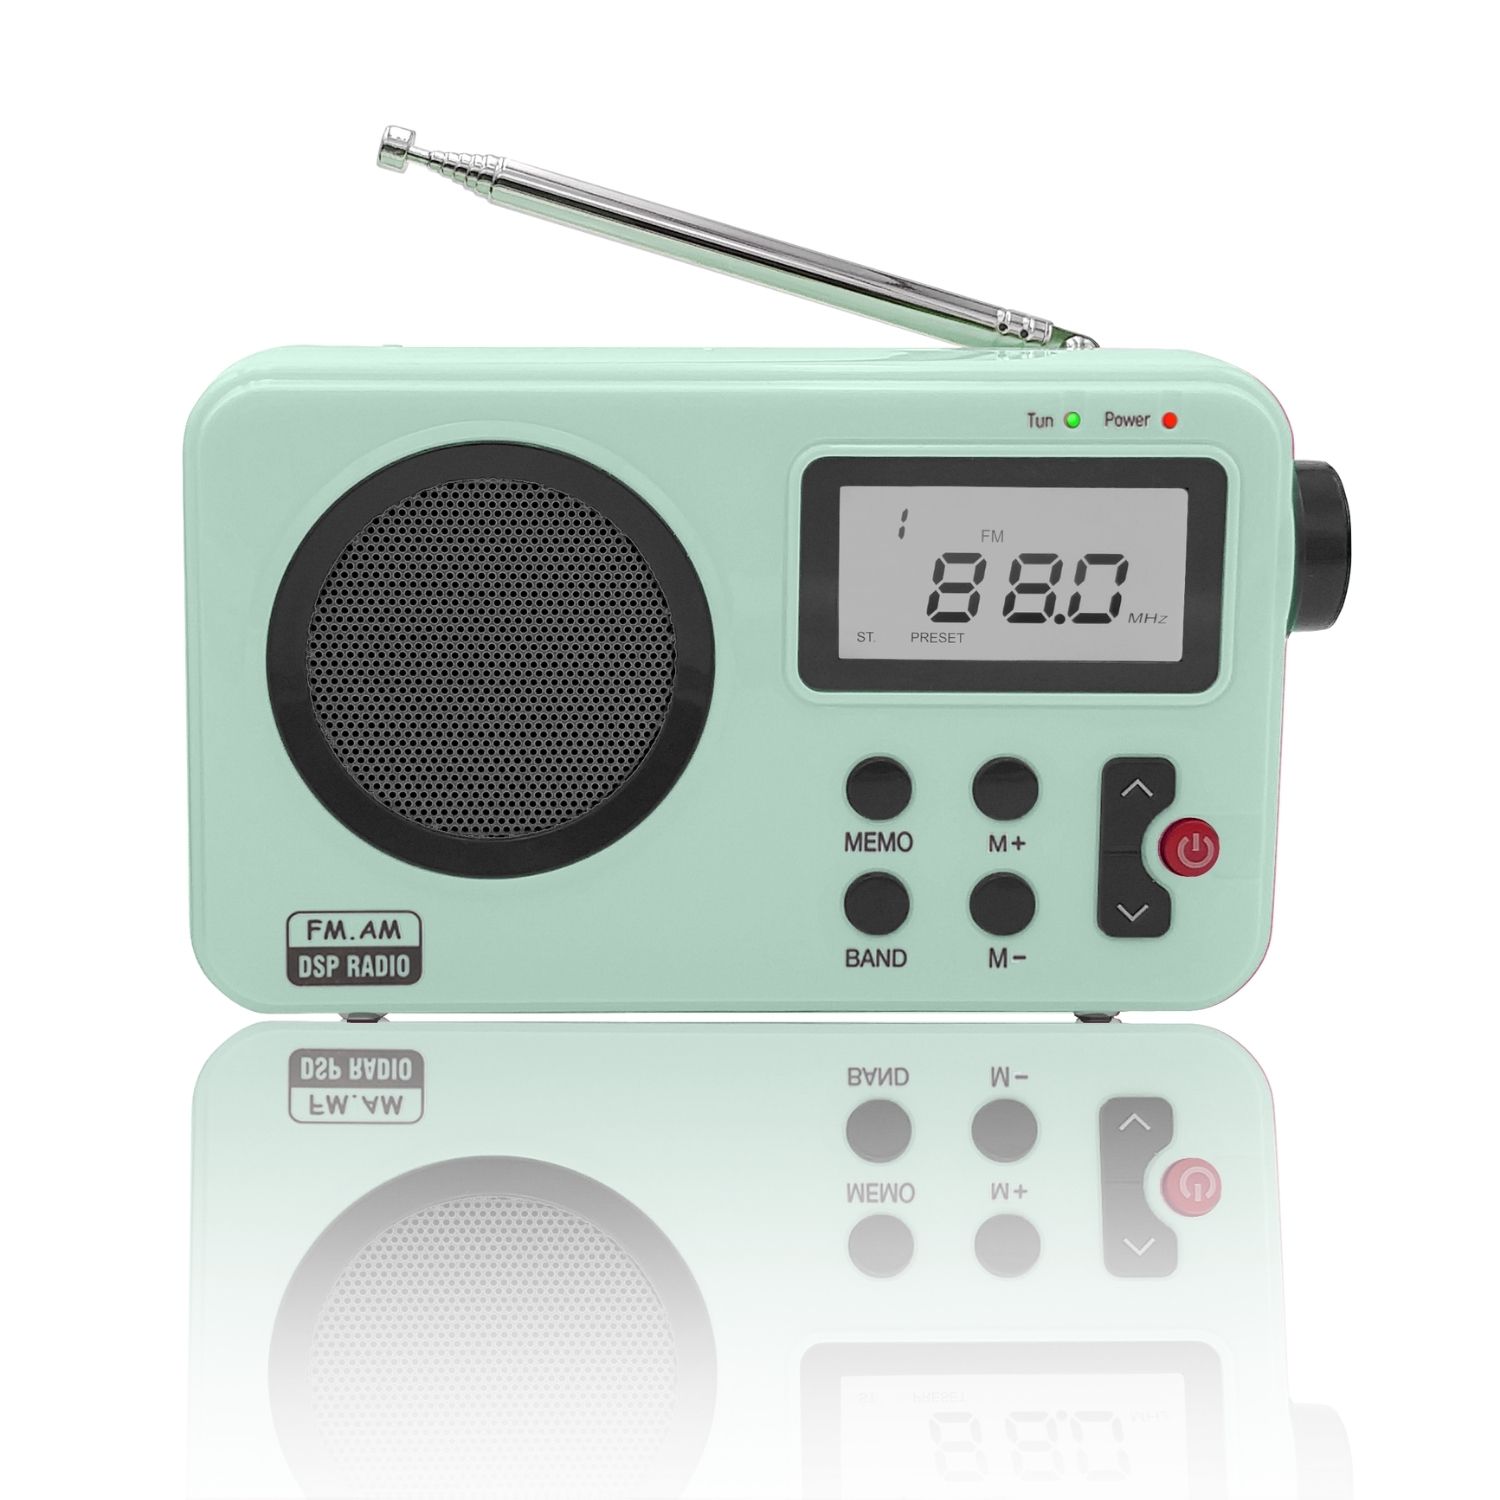 Comprar Radio portátil Inves KR4500 digital AM/FM con altavoz · Hipercor